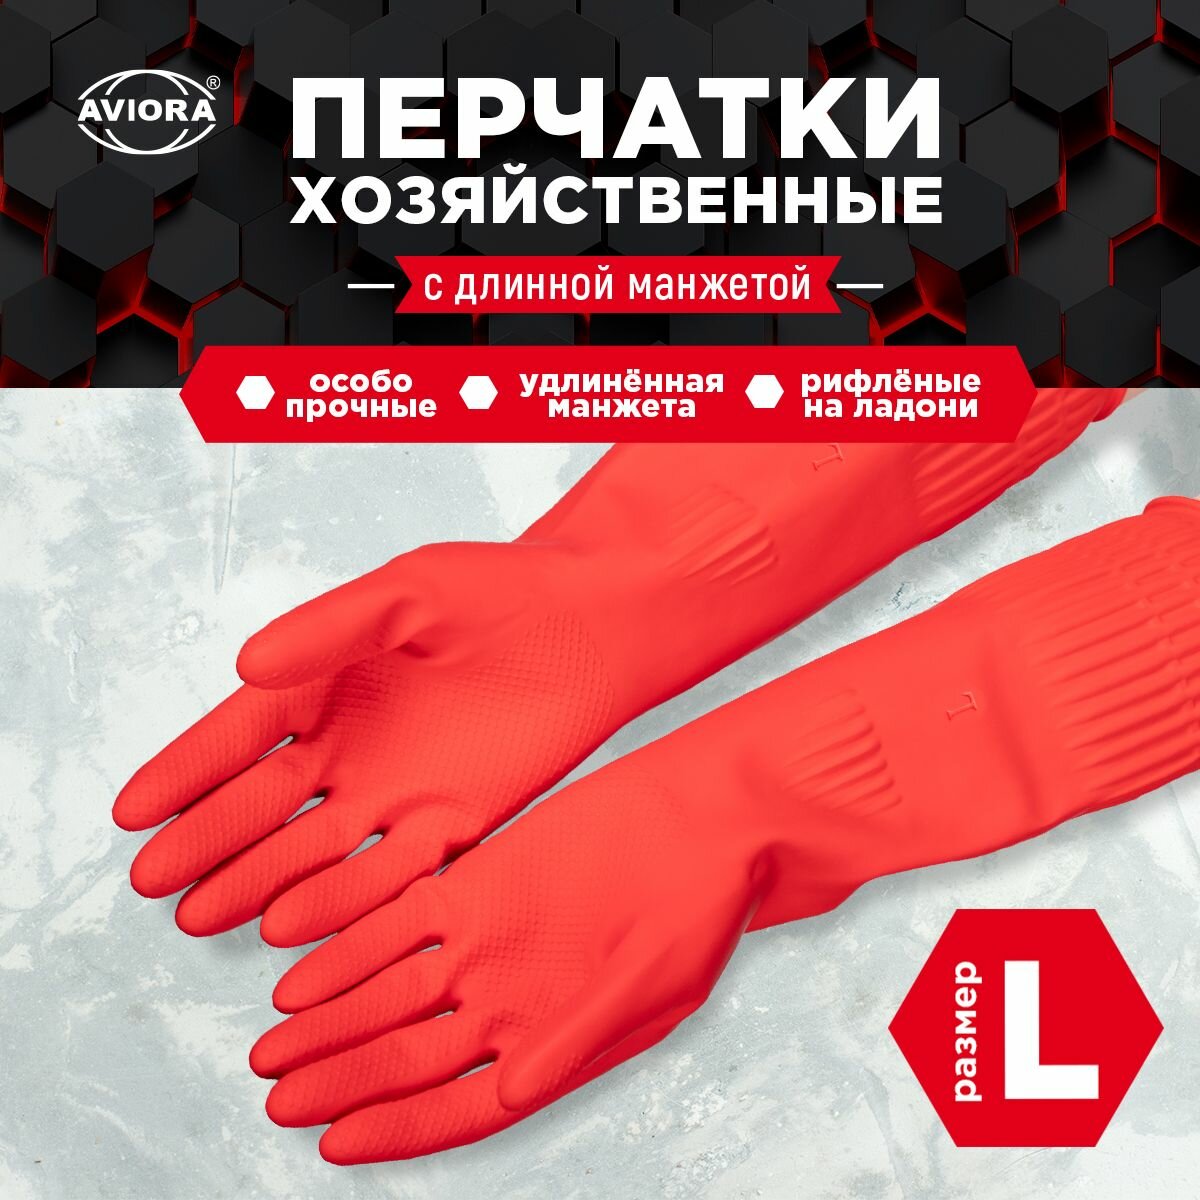 Хозяйственные перчатки резиновые с удлиненной манжетой, размер L, AVIORA (402-940)